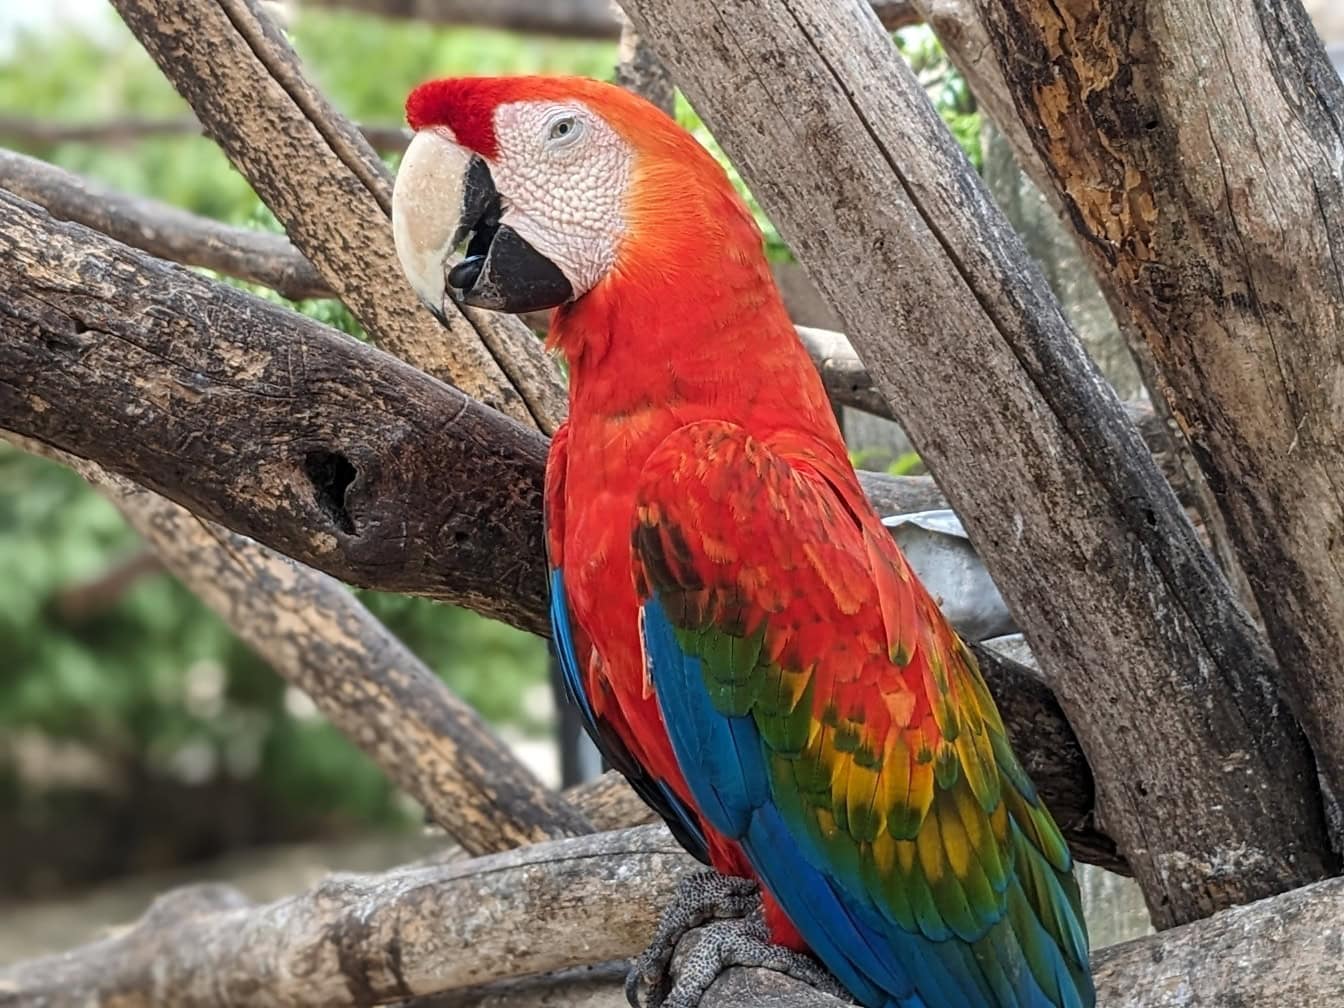 O papagaio-arara-vermelha em um galho de árvore (Ara macao) um grande papagaio neotropical exótico nativo das florestas tropicais das Américas